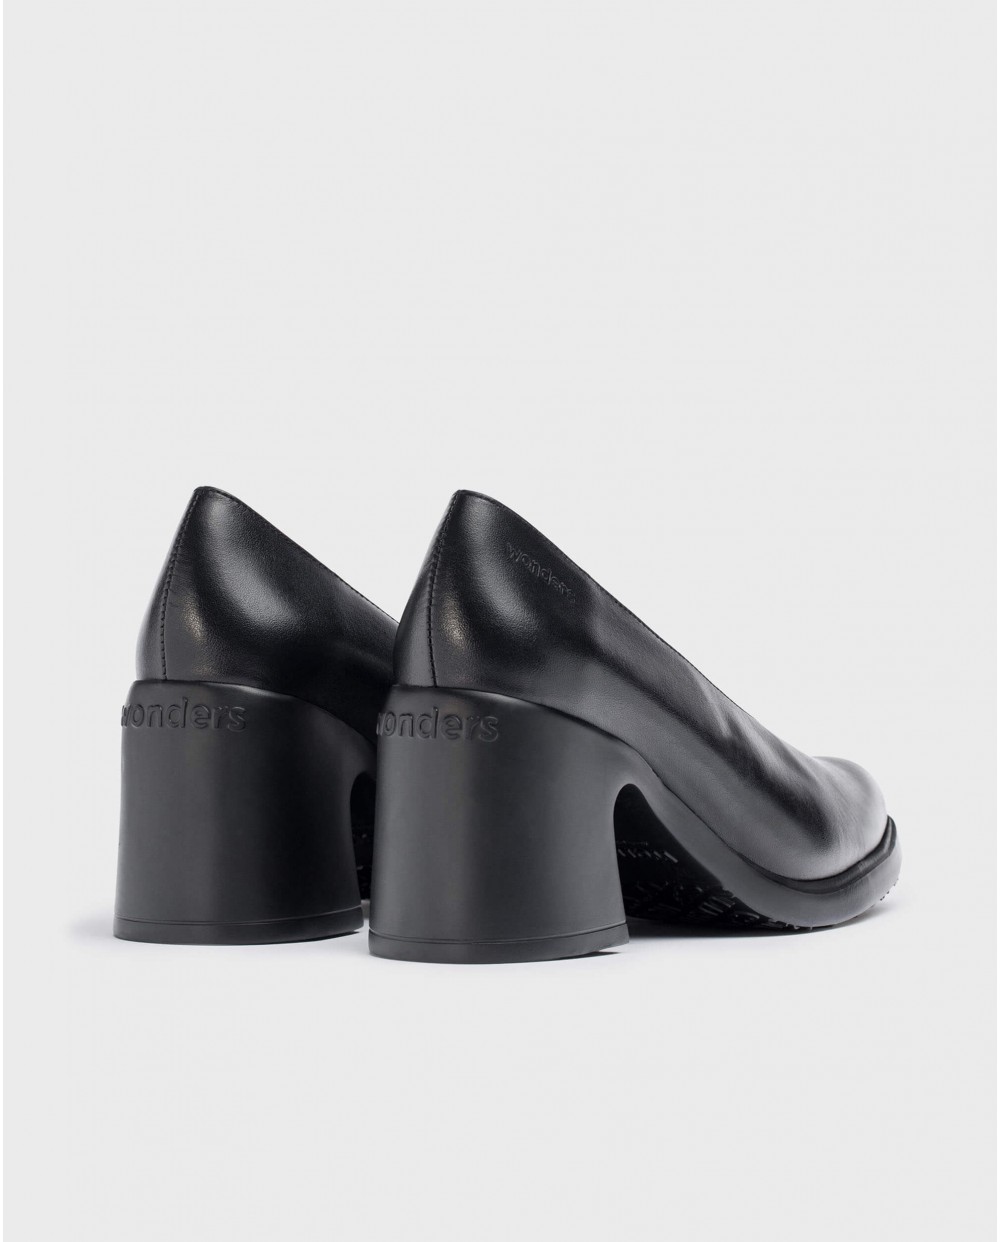 Wonders-Heels-Black ELEY high-heeled shoe